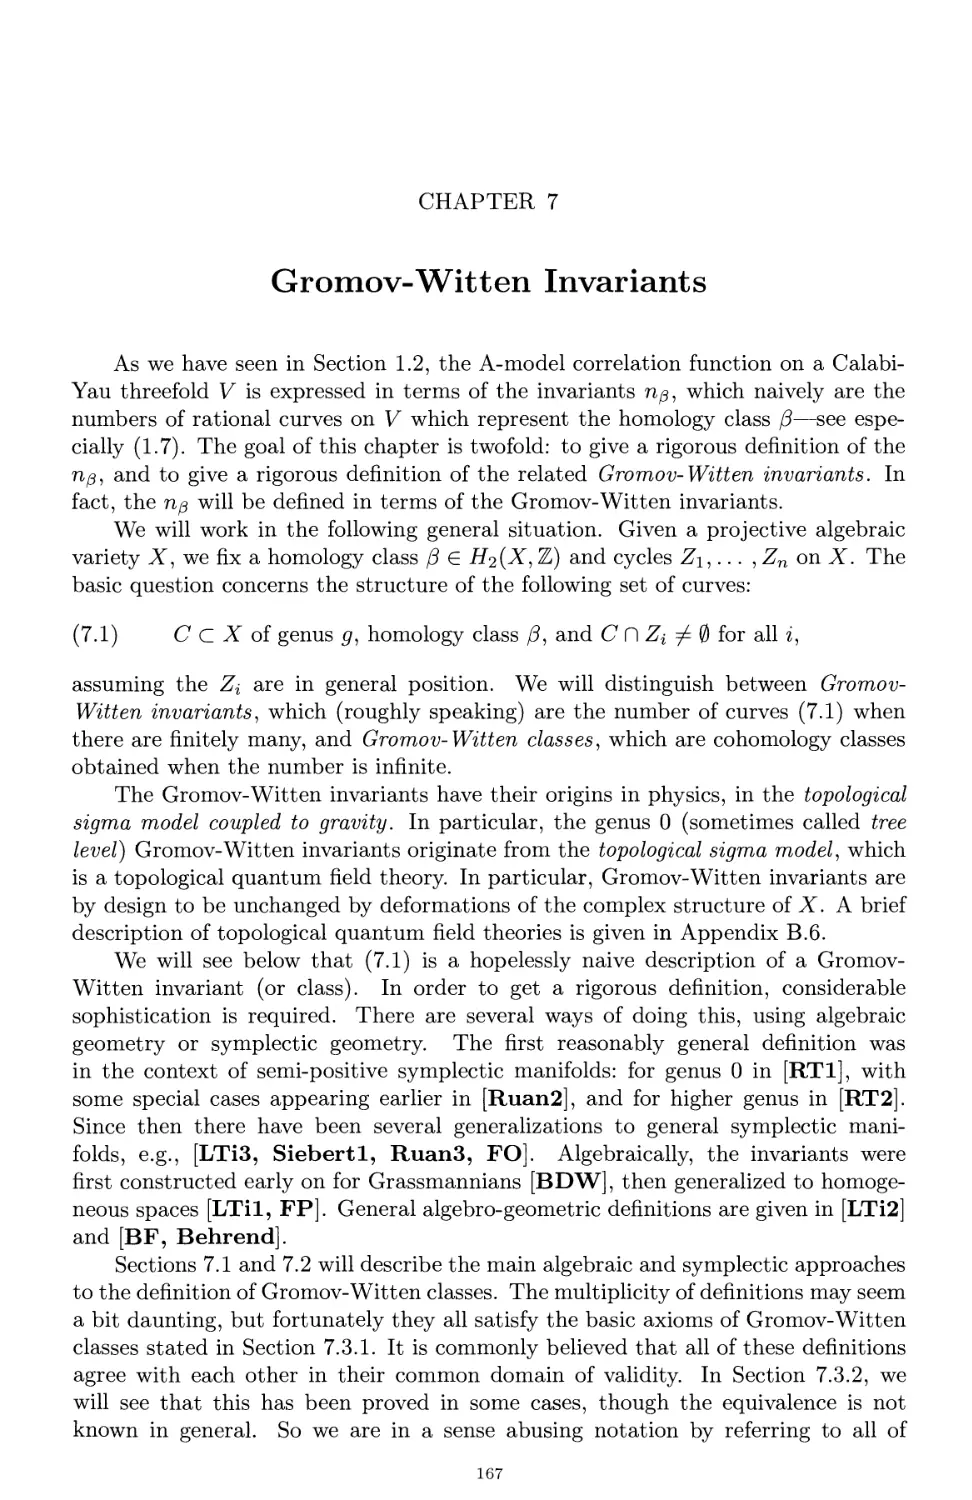 Chapter 7. Gromov-Witten Invariants